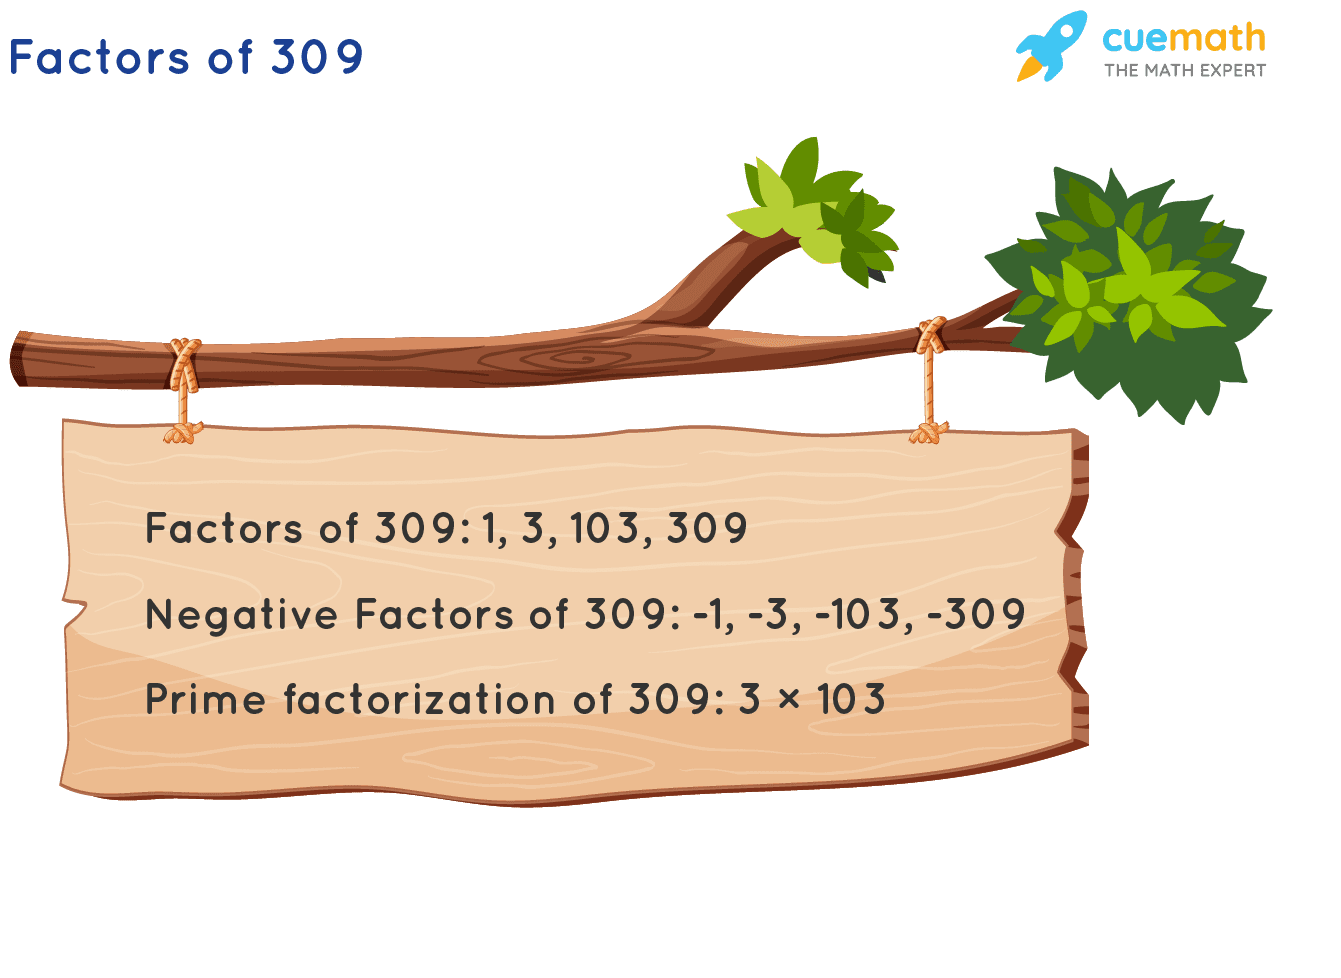 Factors of 309